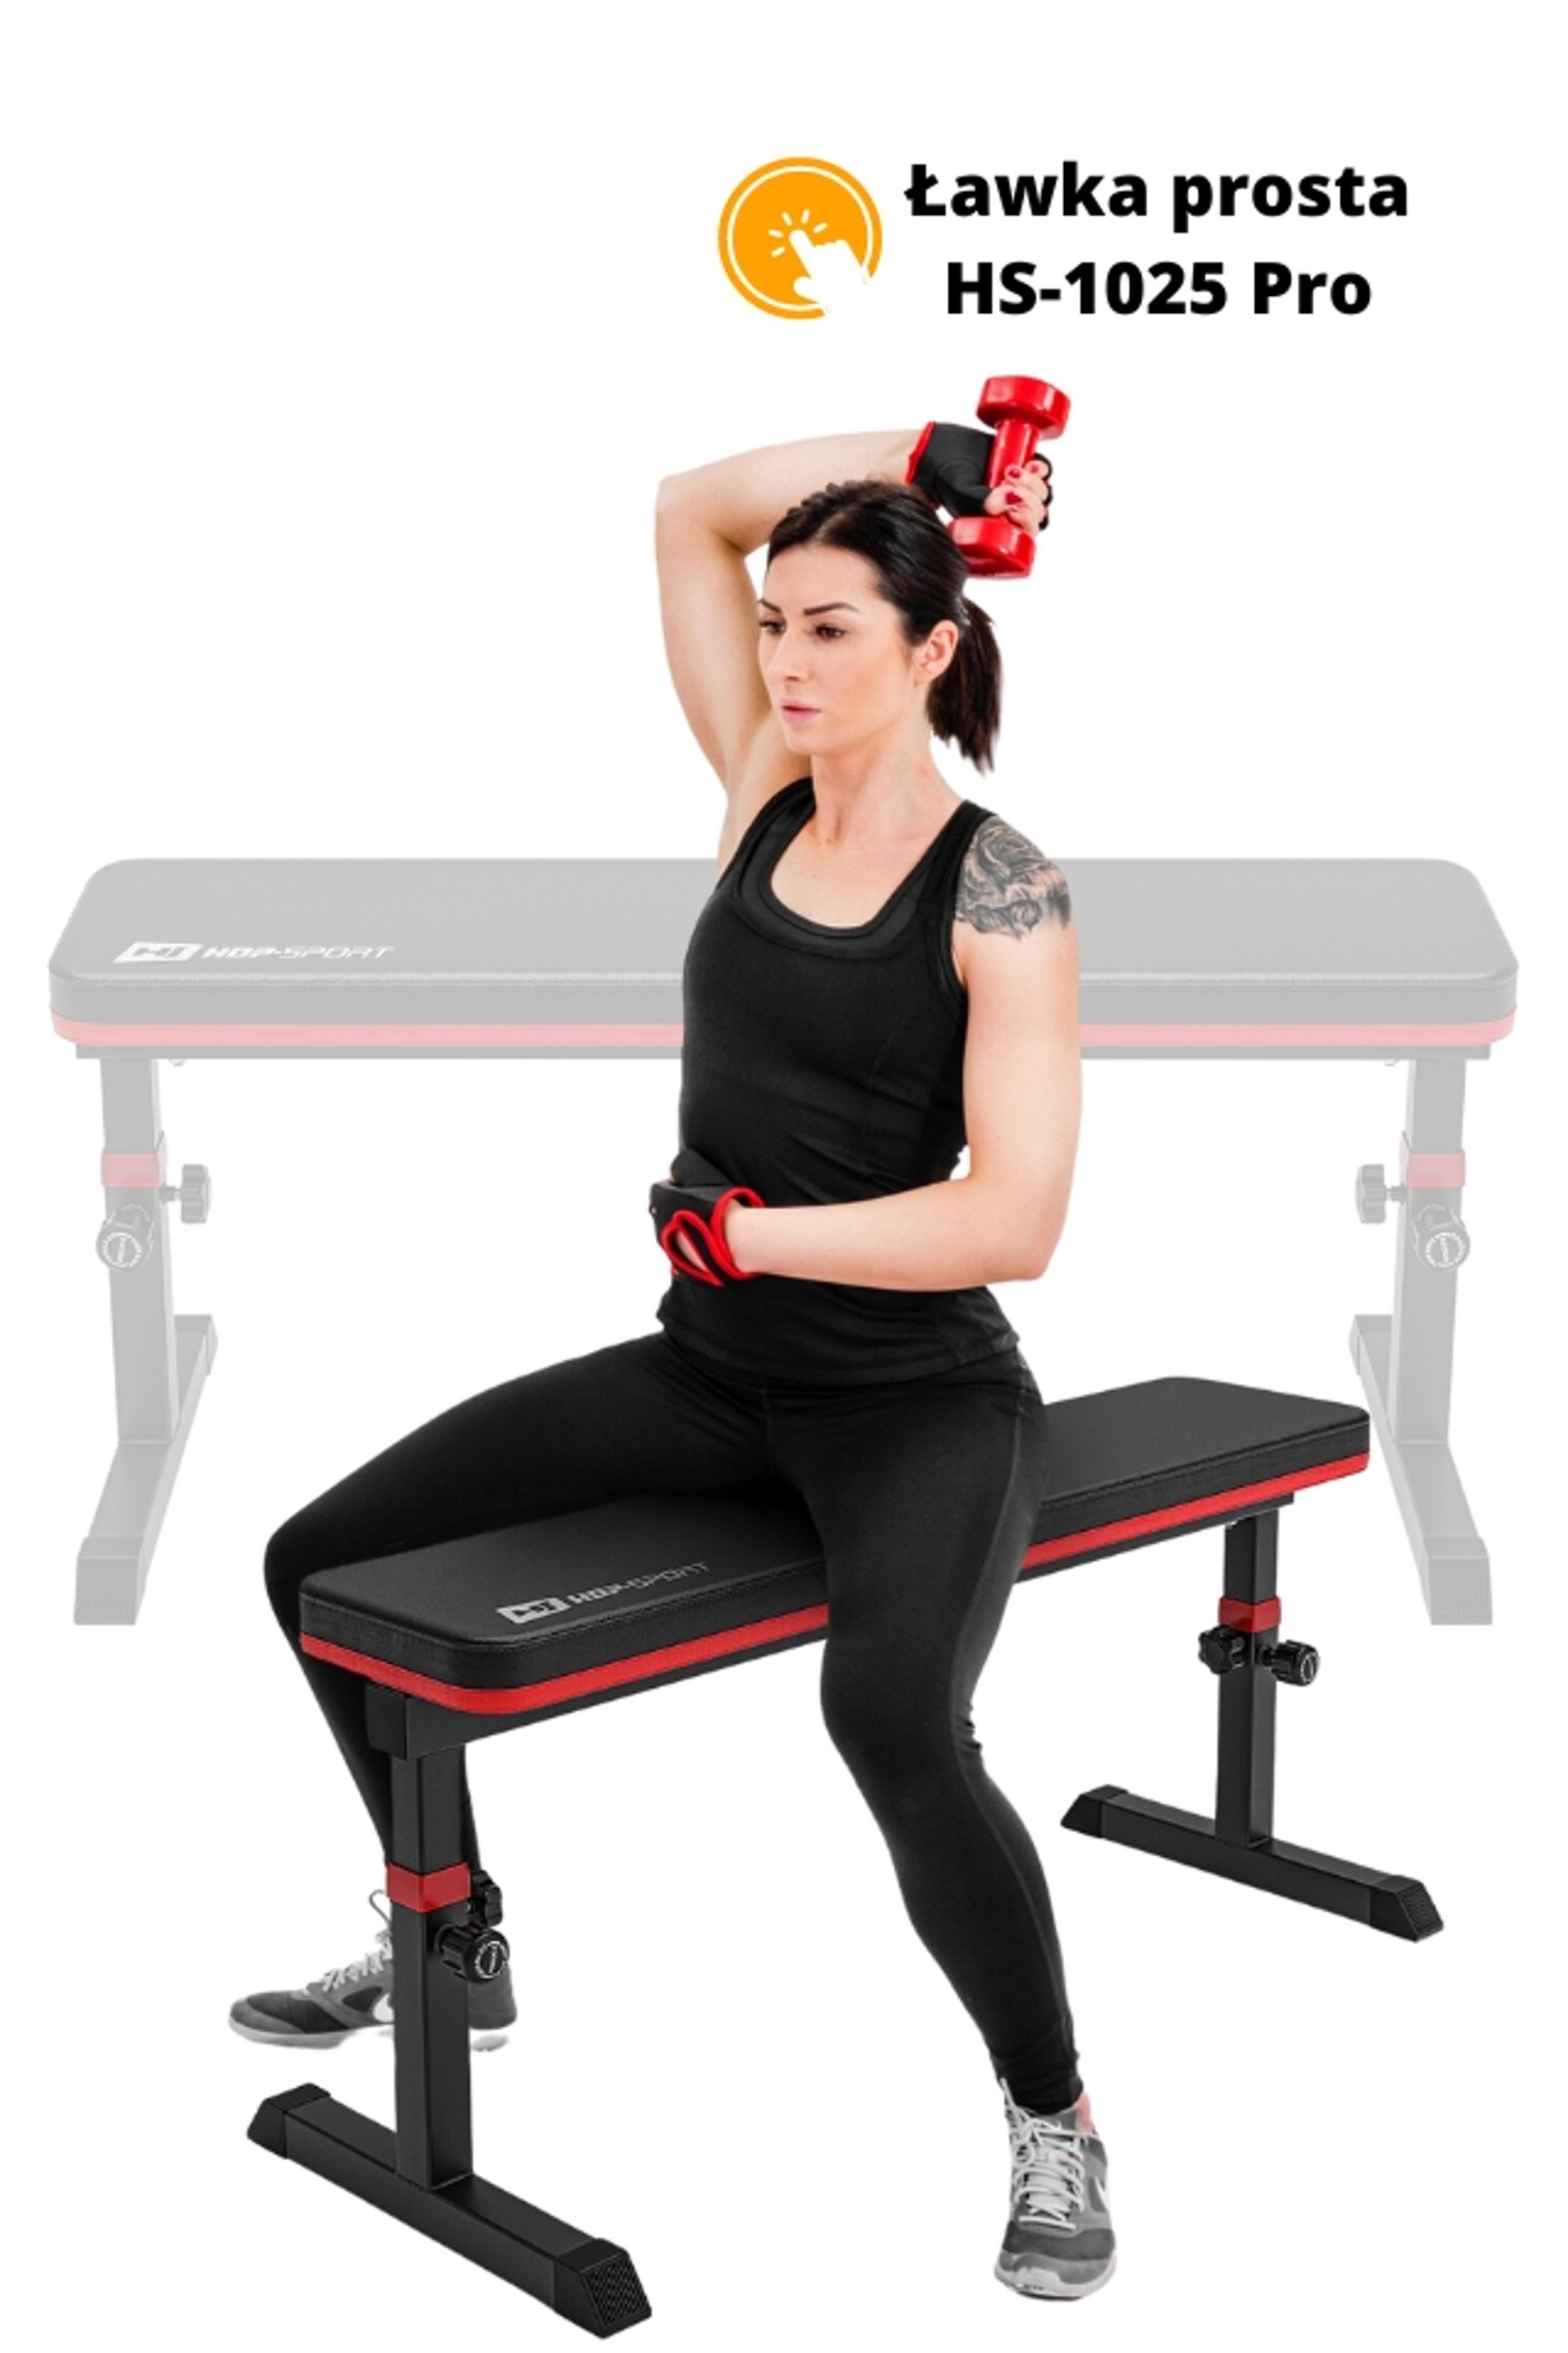 Modelka ćwicząca z hantlami na ławce treningowej prostej HS-1025 Pro marki Hop-Sport